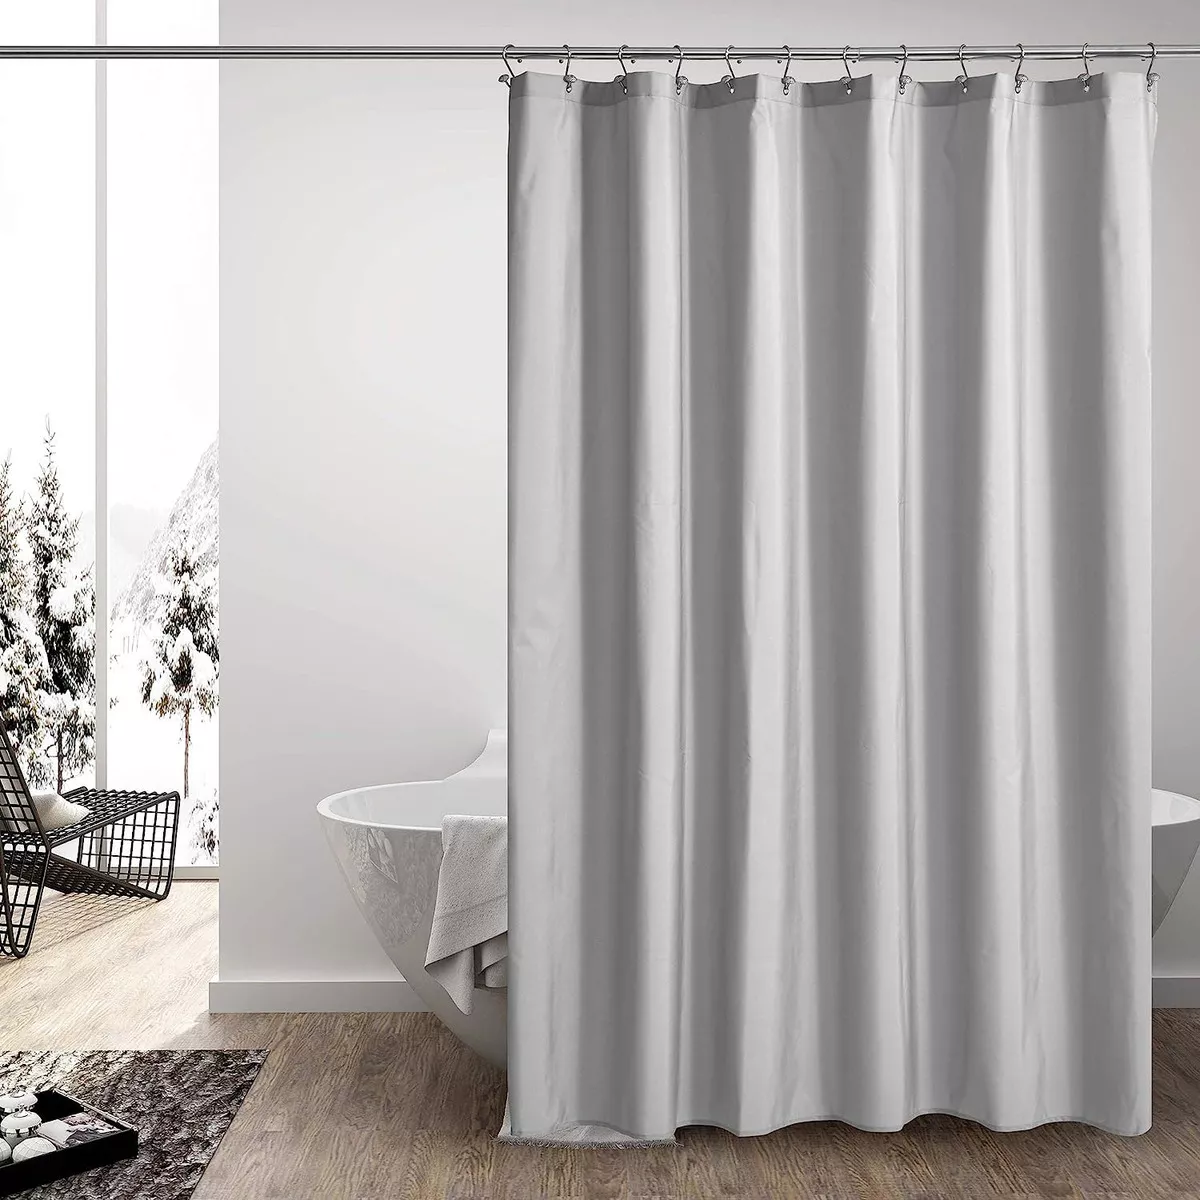 Primera imagen para búsqueda de cortinas de bano